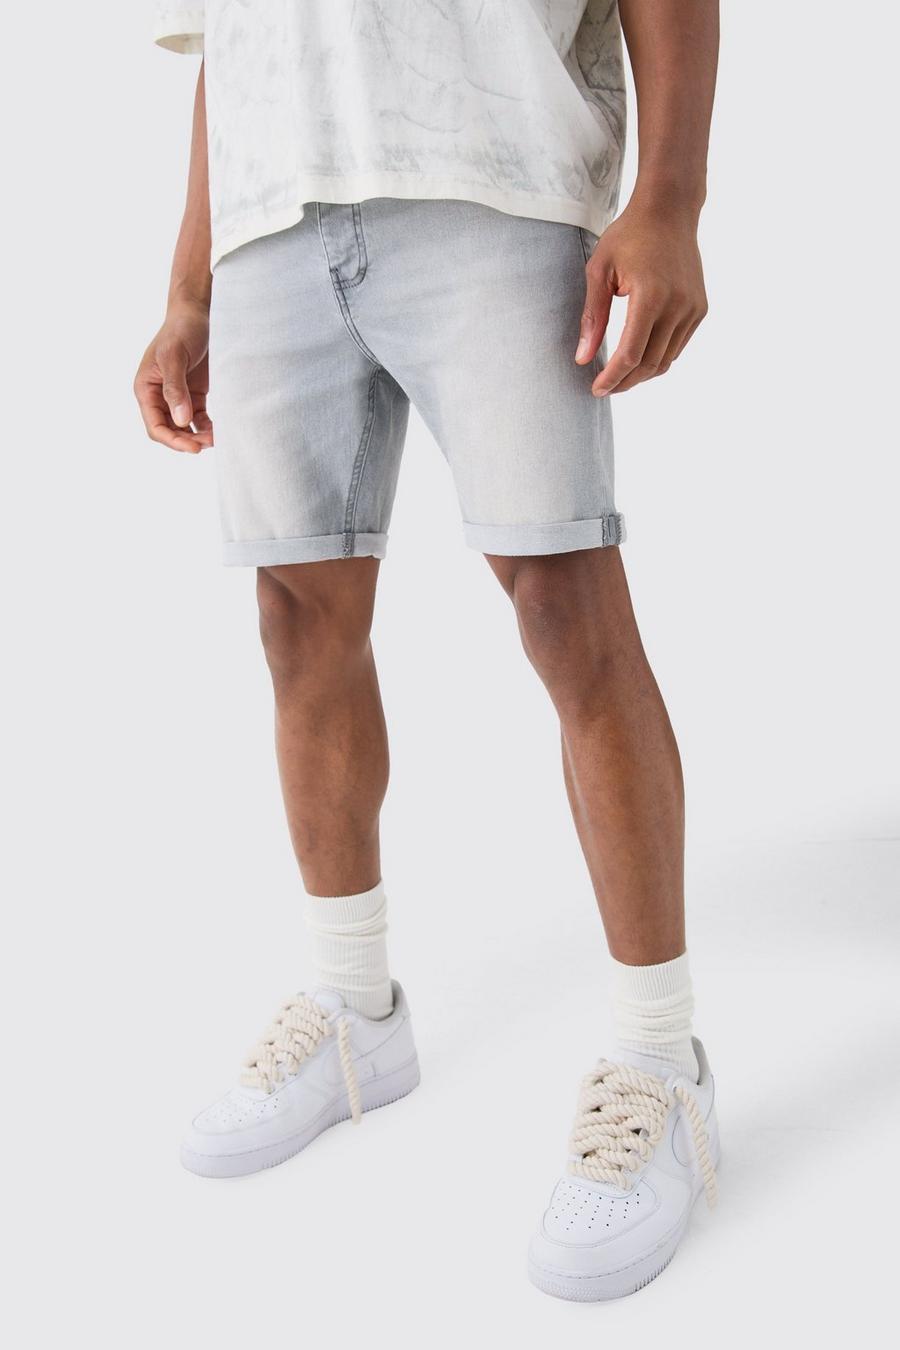 Pantaloncini in denim Stretch Skinny Fit in grigio chiaro, Light grey